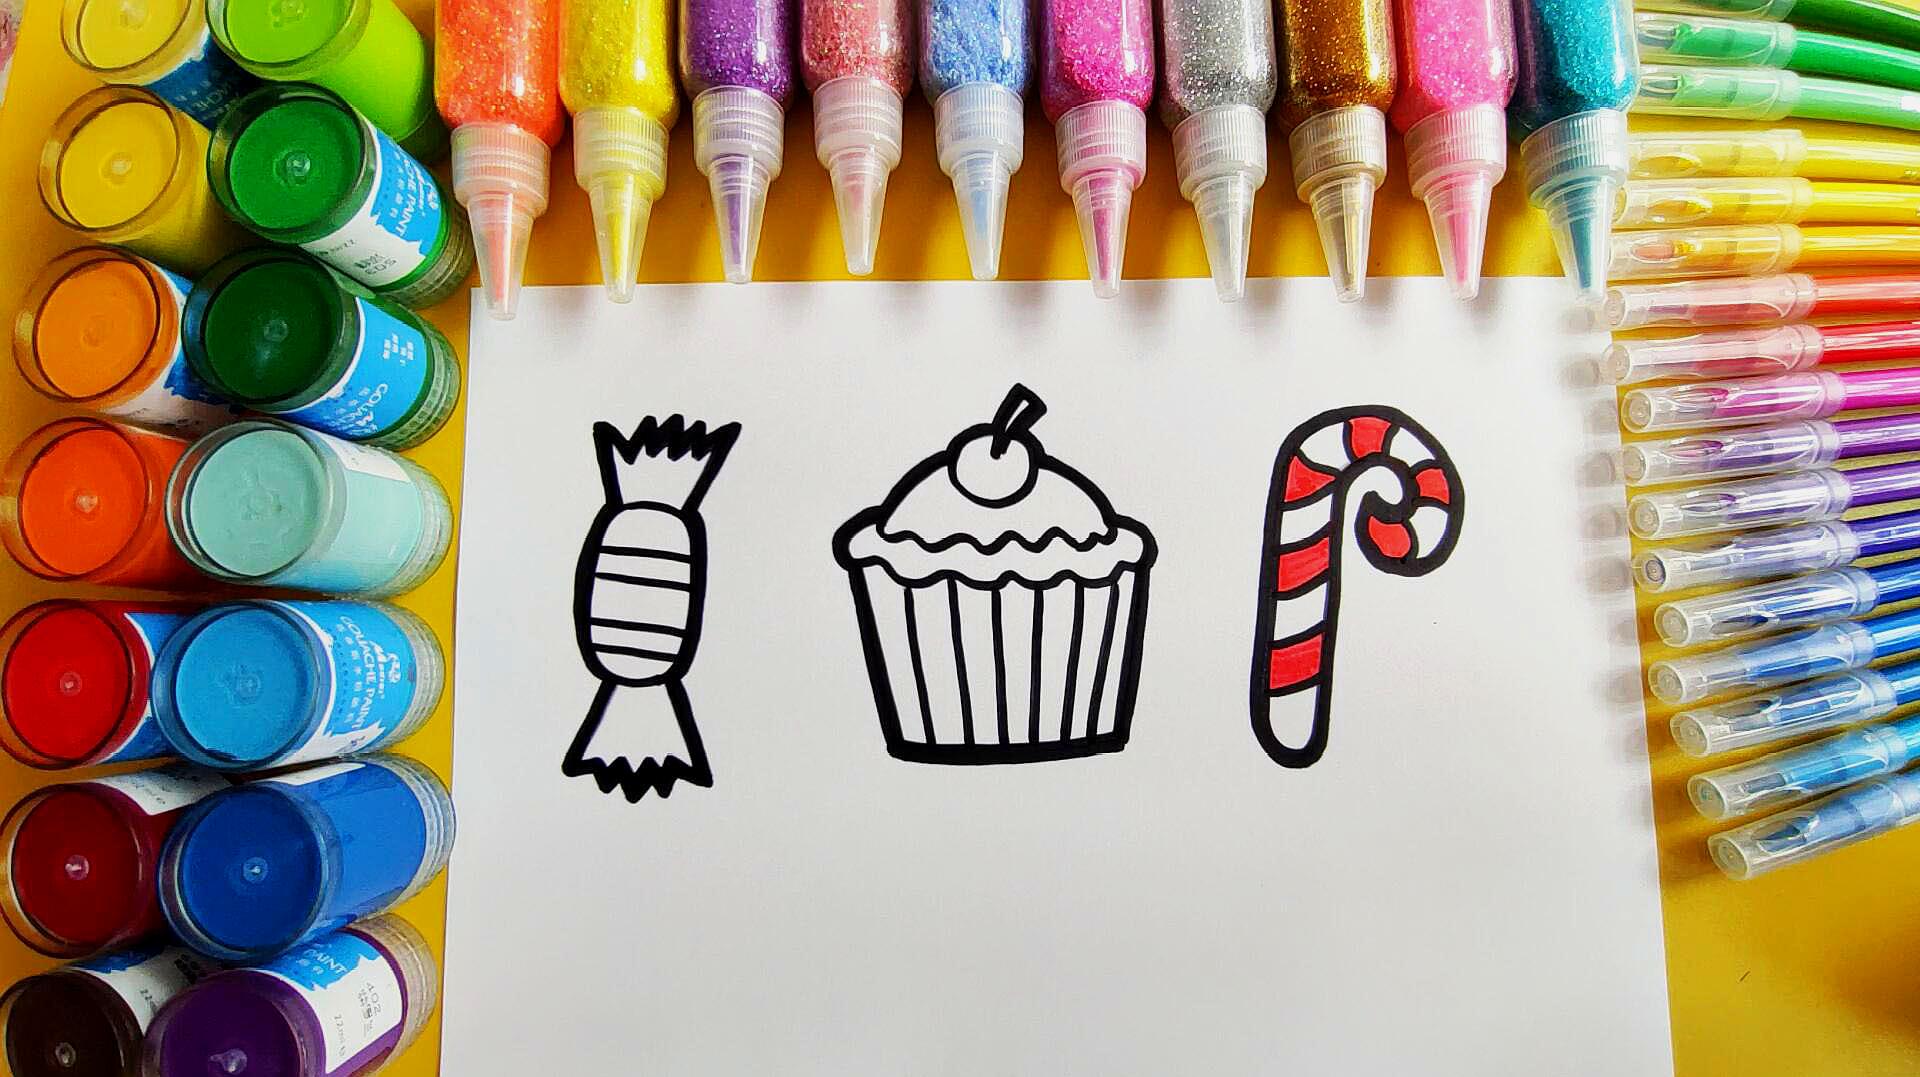 3可爱糖果简笔画:首先画出椭圆形的糖果形状,接着画出两侧糖纸,中间